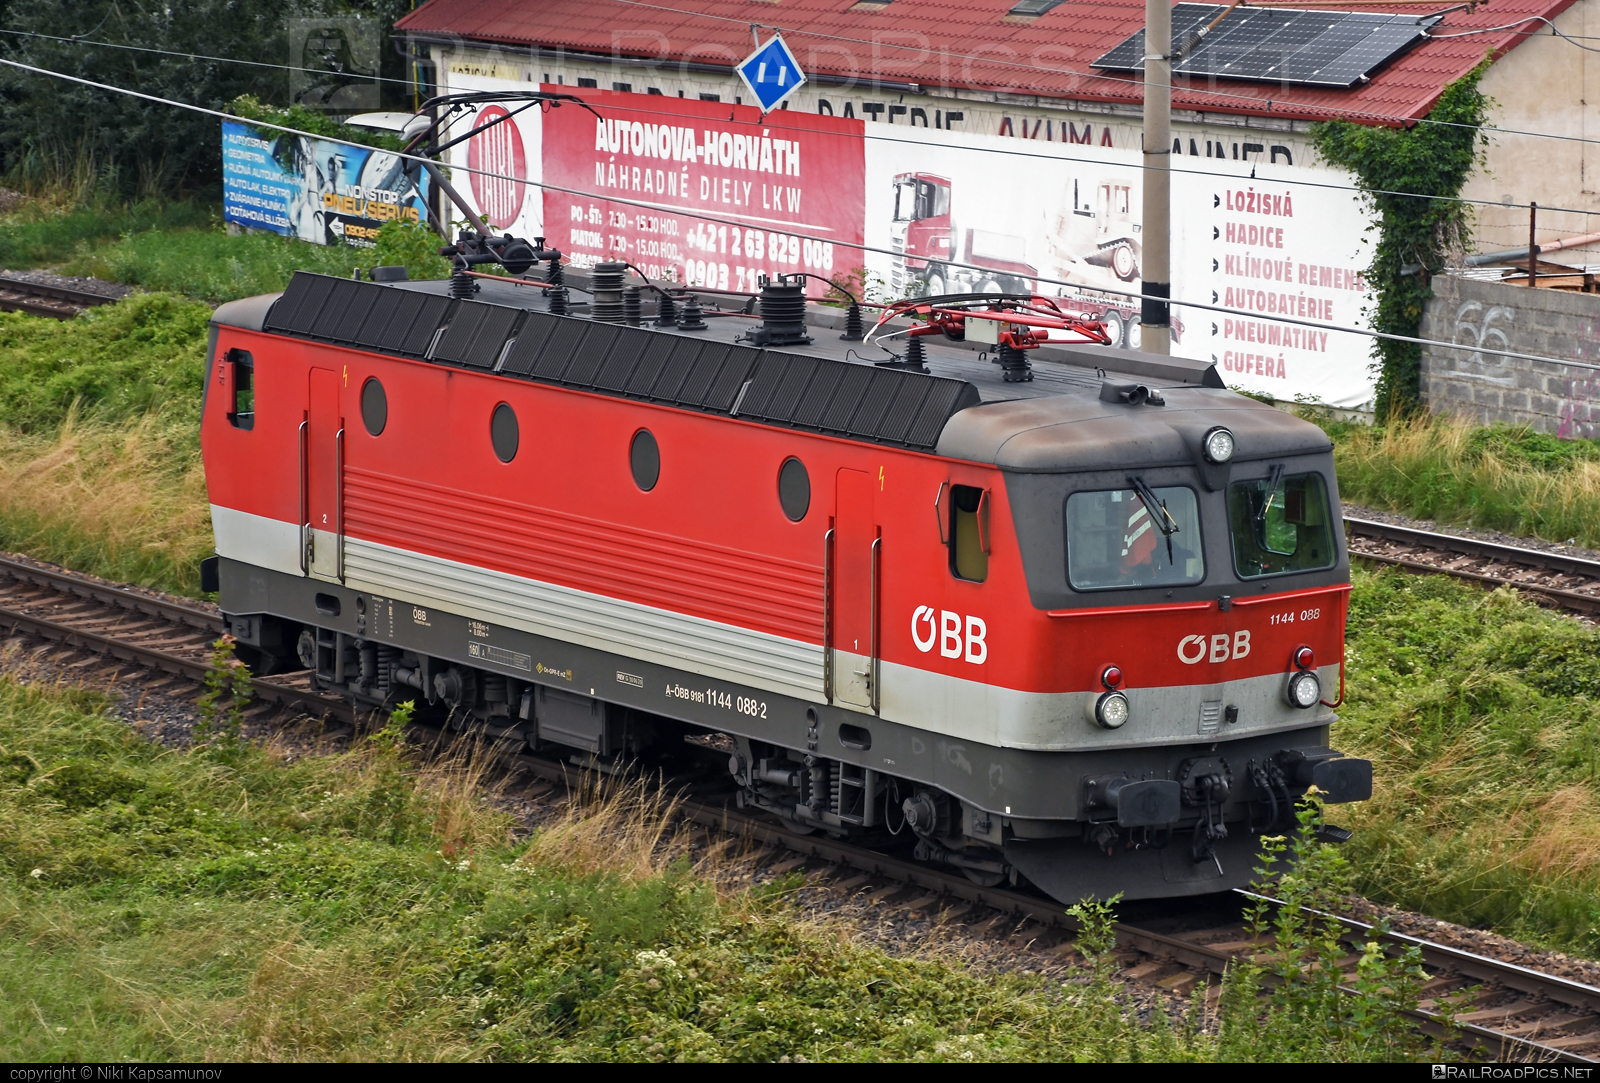 SGP ÖBB Class 1144 - 1144 088 operated by Rail Cargo Austria AG #obb #obbclass1144 #osterreichischebundesbahnen #rcw #sgp #sgp1144 #simmeringgrazpauker